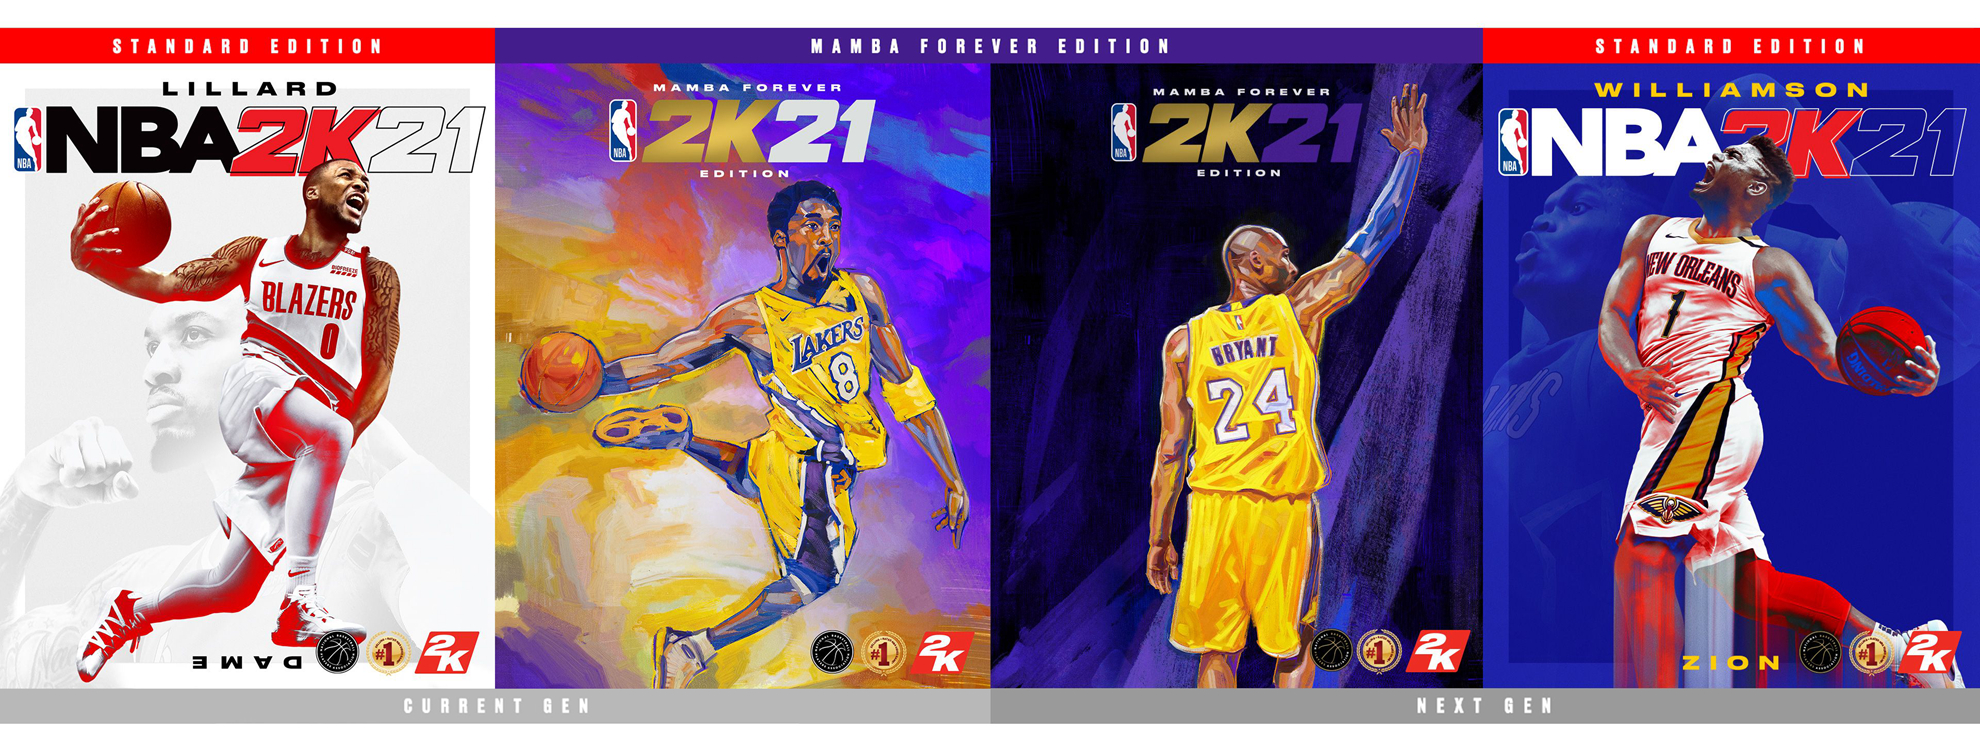 球场、音乐、打扮、球鞋战文化——看本世代NBA 2K21如何为所欲为